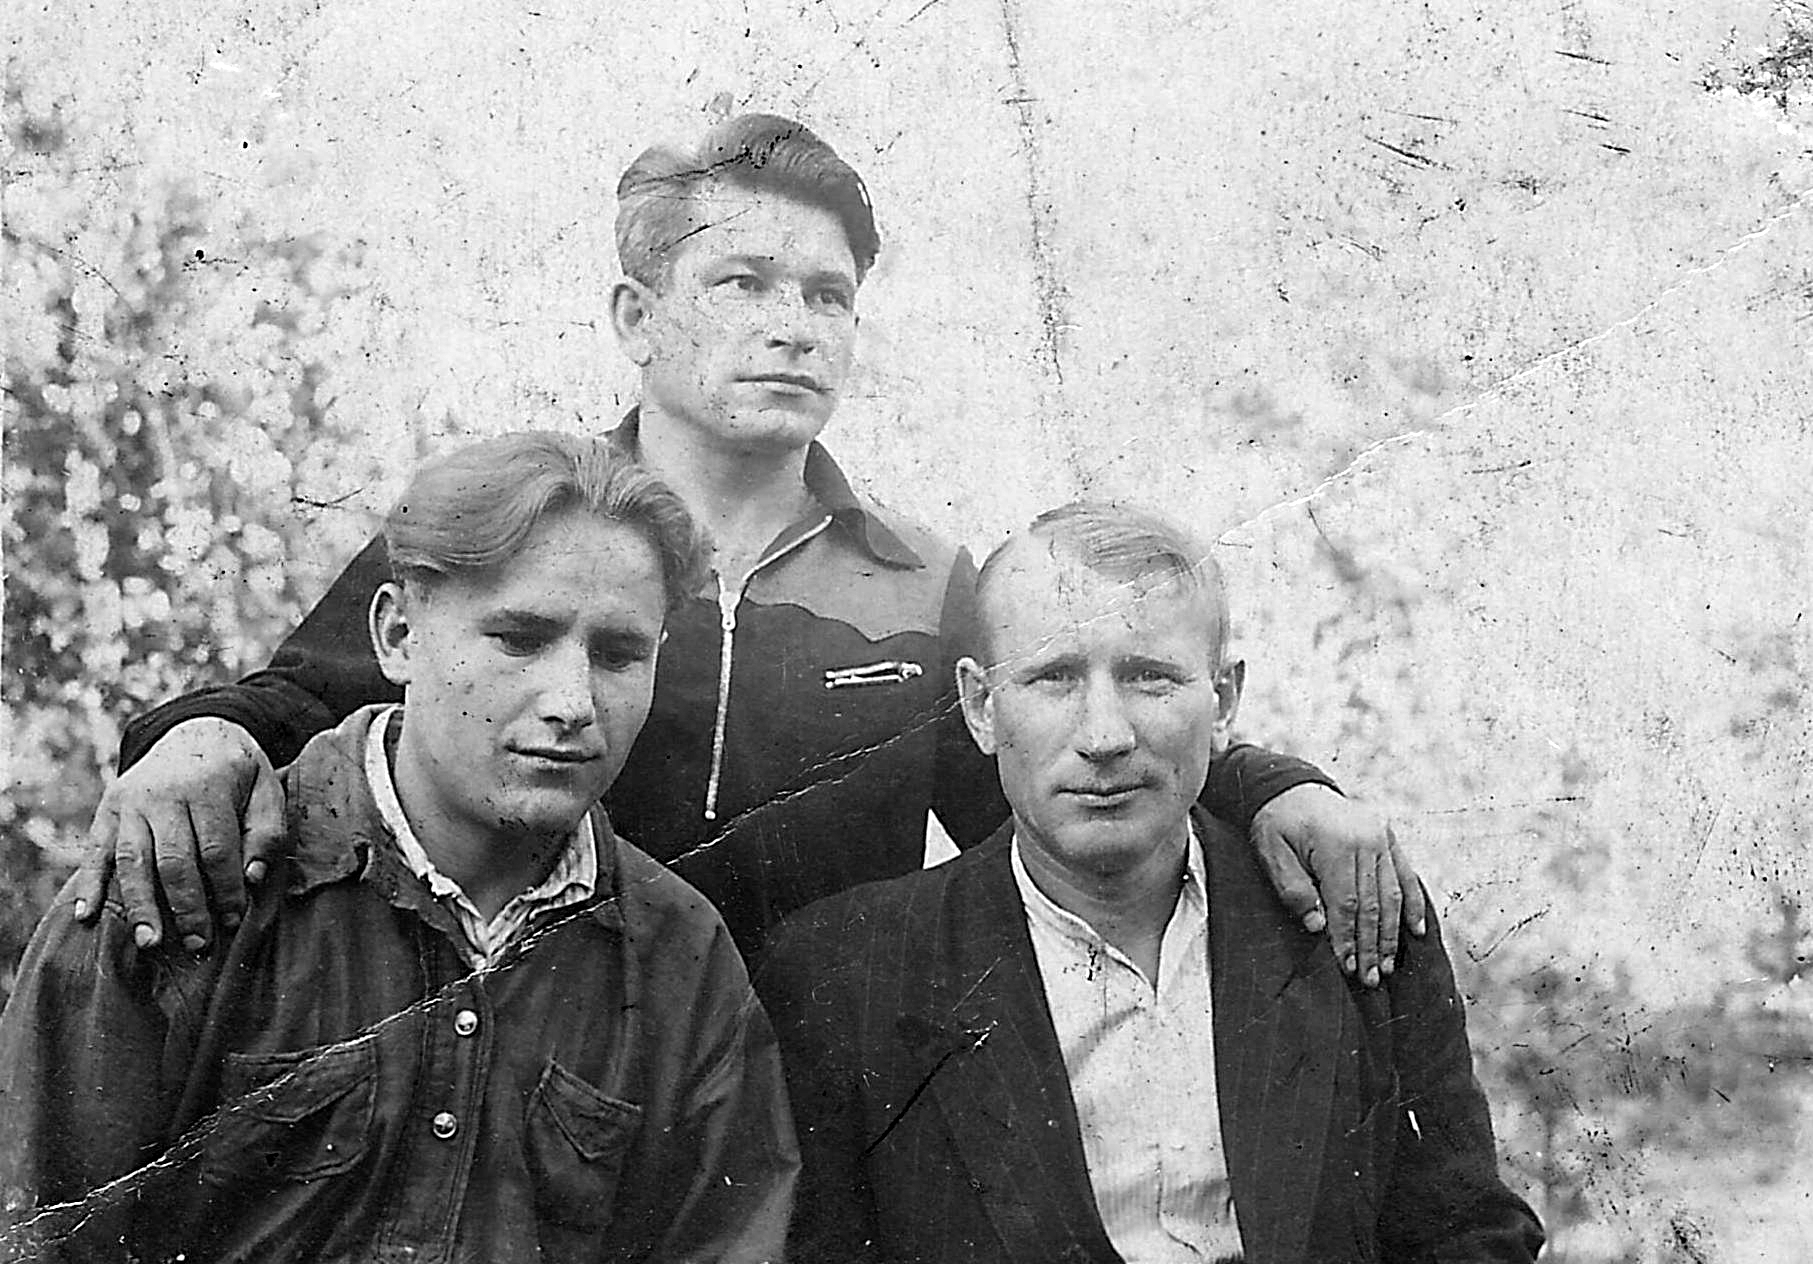 Добрецов Александр Федорович ( в центре) фото из семейного архива внука Добрецова А.Ю. 